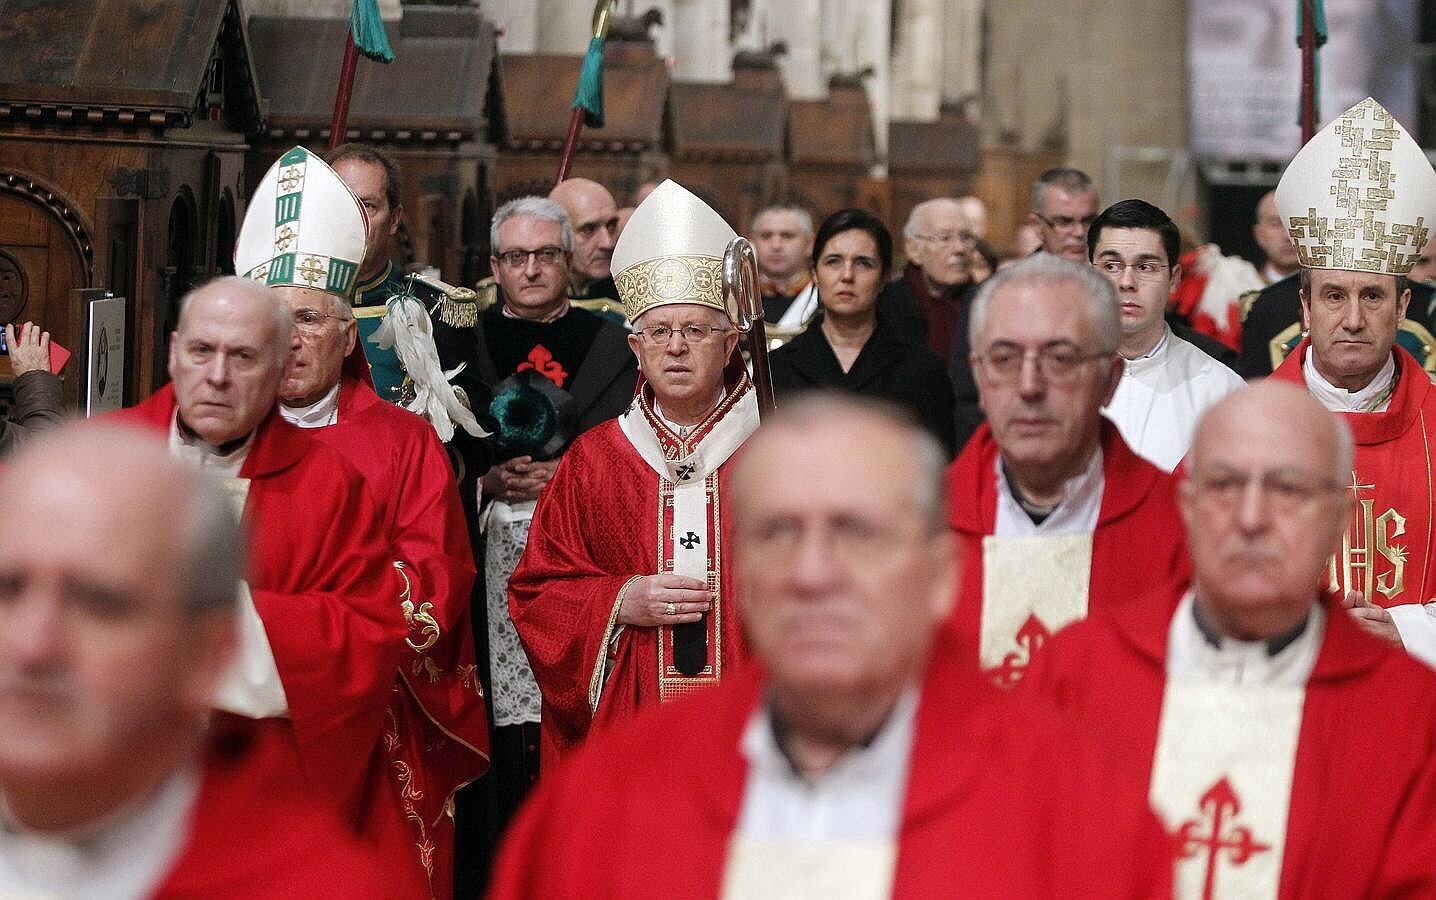 El arzobispo Barrio, que concelebró con el cardenal Rouco Varela, llamó a los cristianos a ser visibles en la sociedad